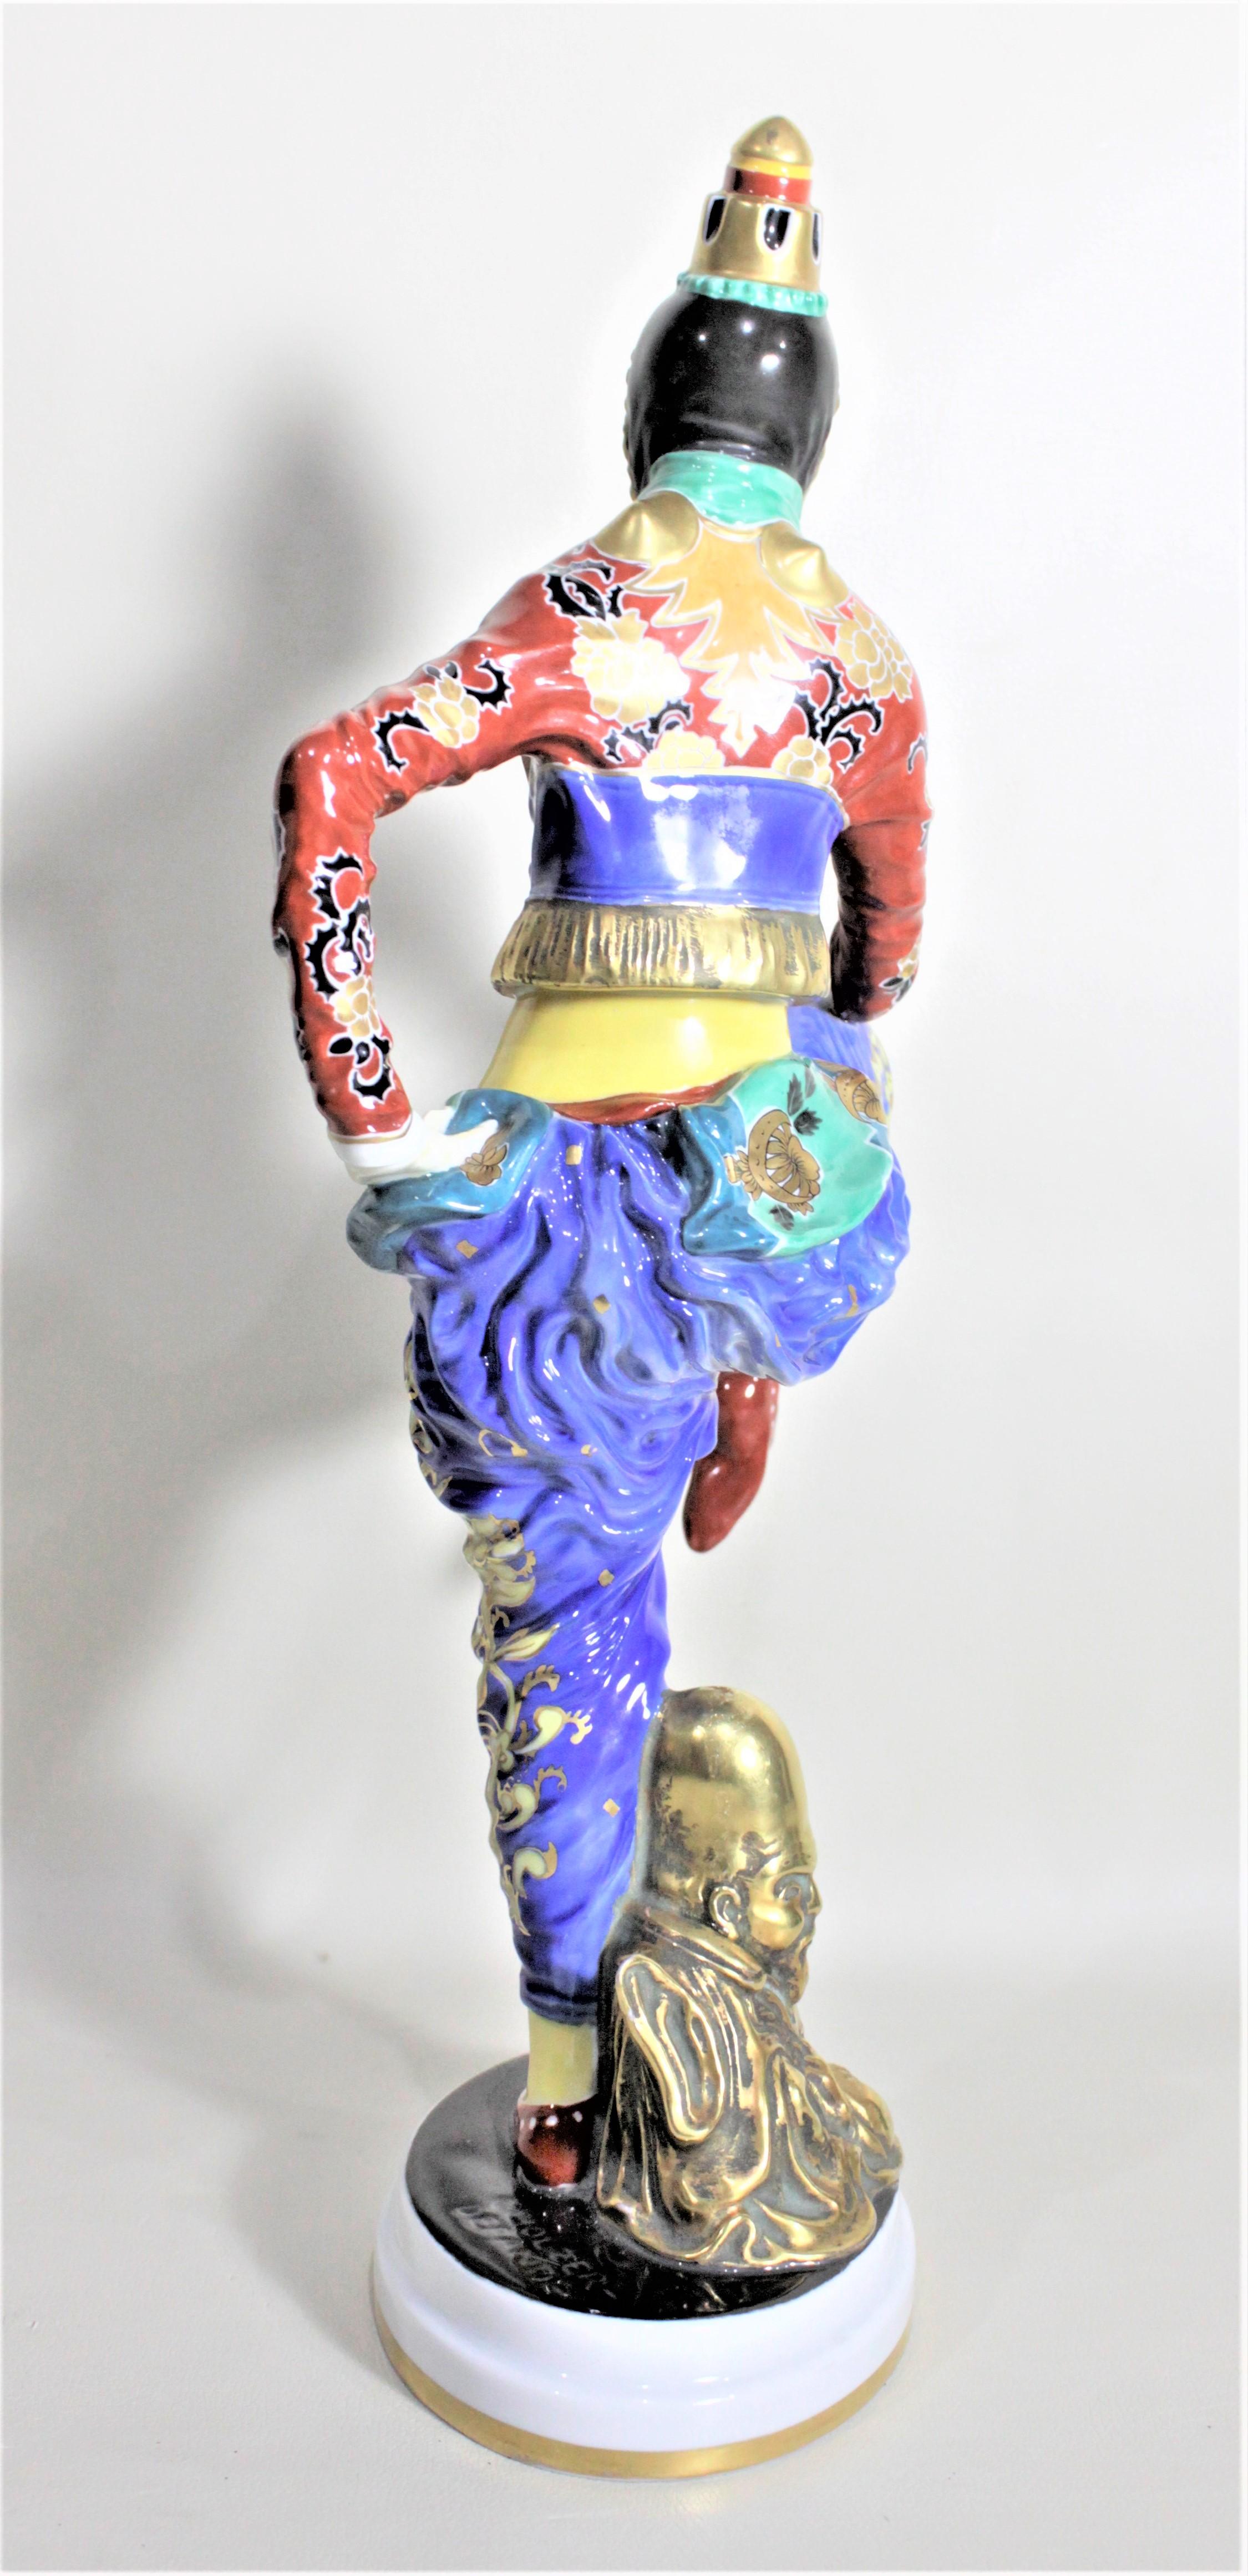 German Large Art Deco Rosenthal Porcelain Figurine The Korean Dancer H566 For Sale